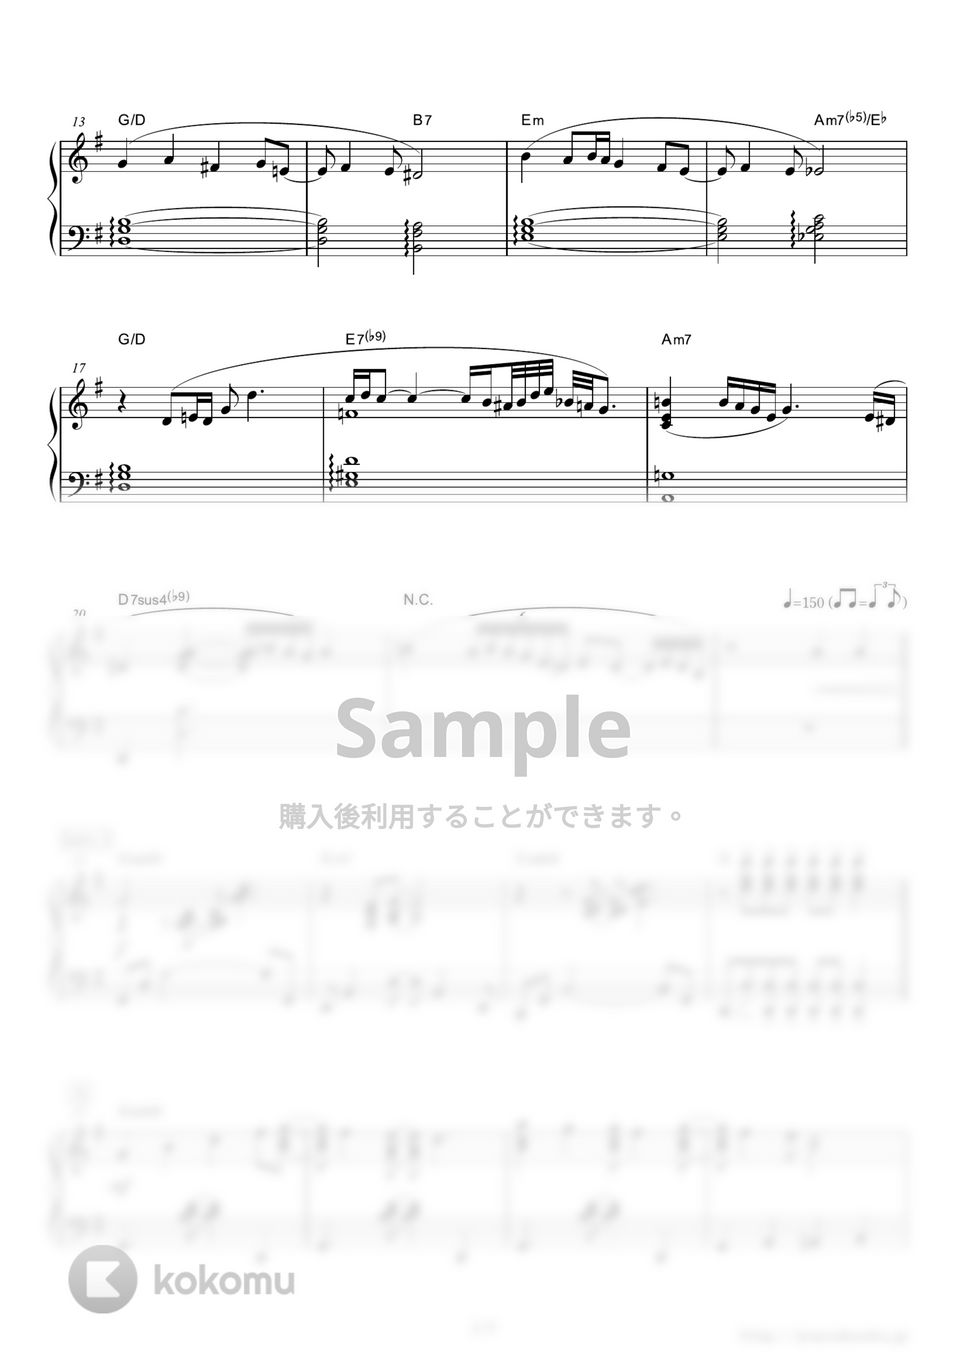 マライア・キャリー - 恋人たちのクリスマス (ドラマ『29歳のクリスマス』主題歌) by ピアノの本棚